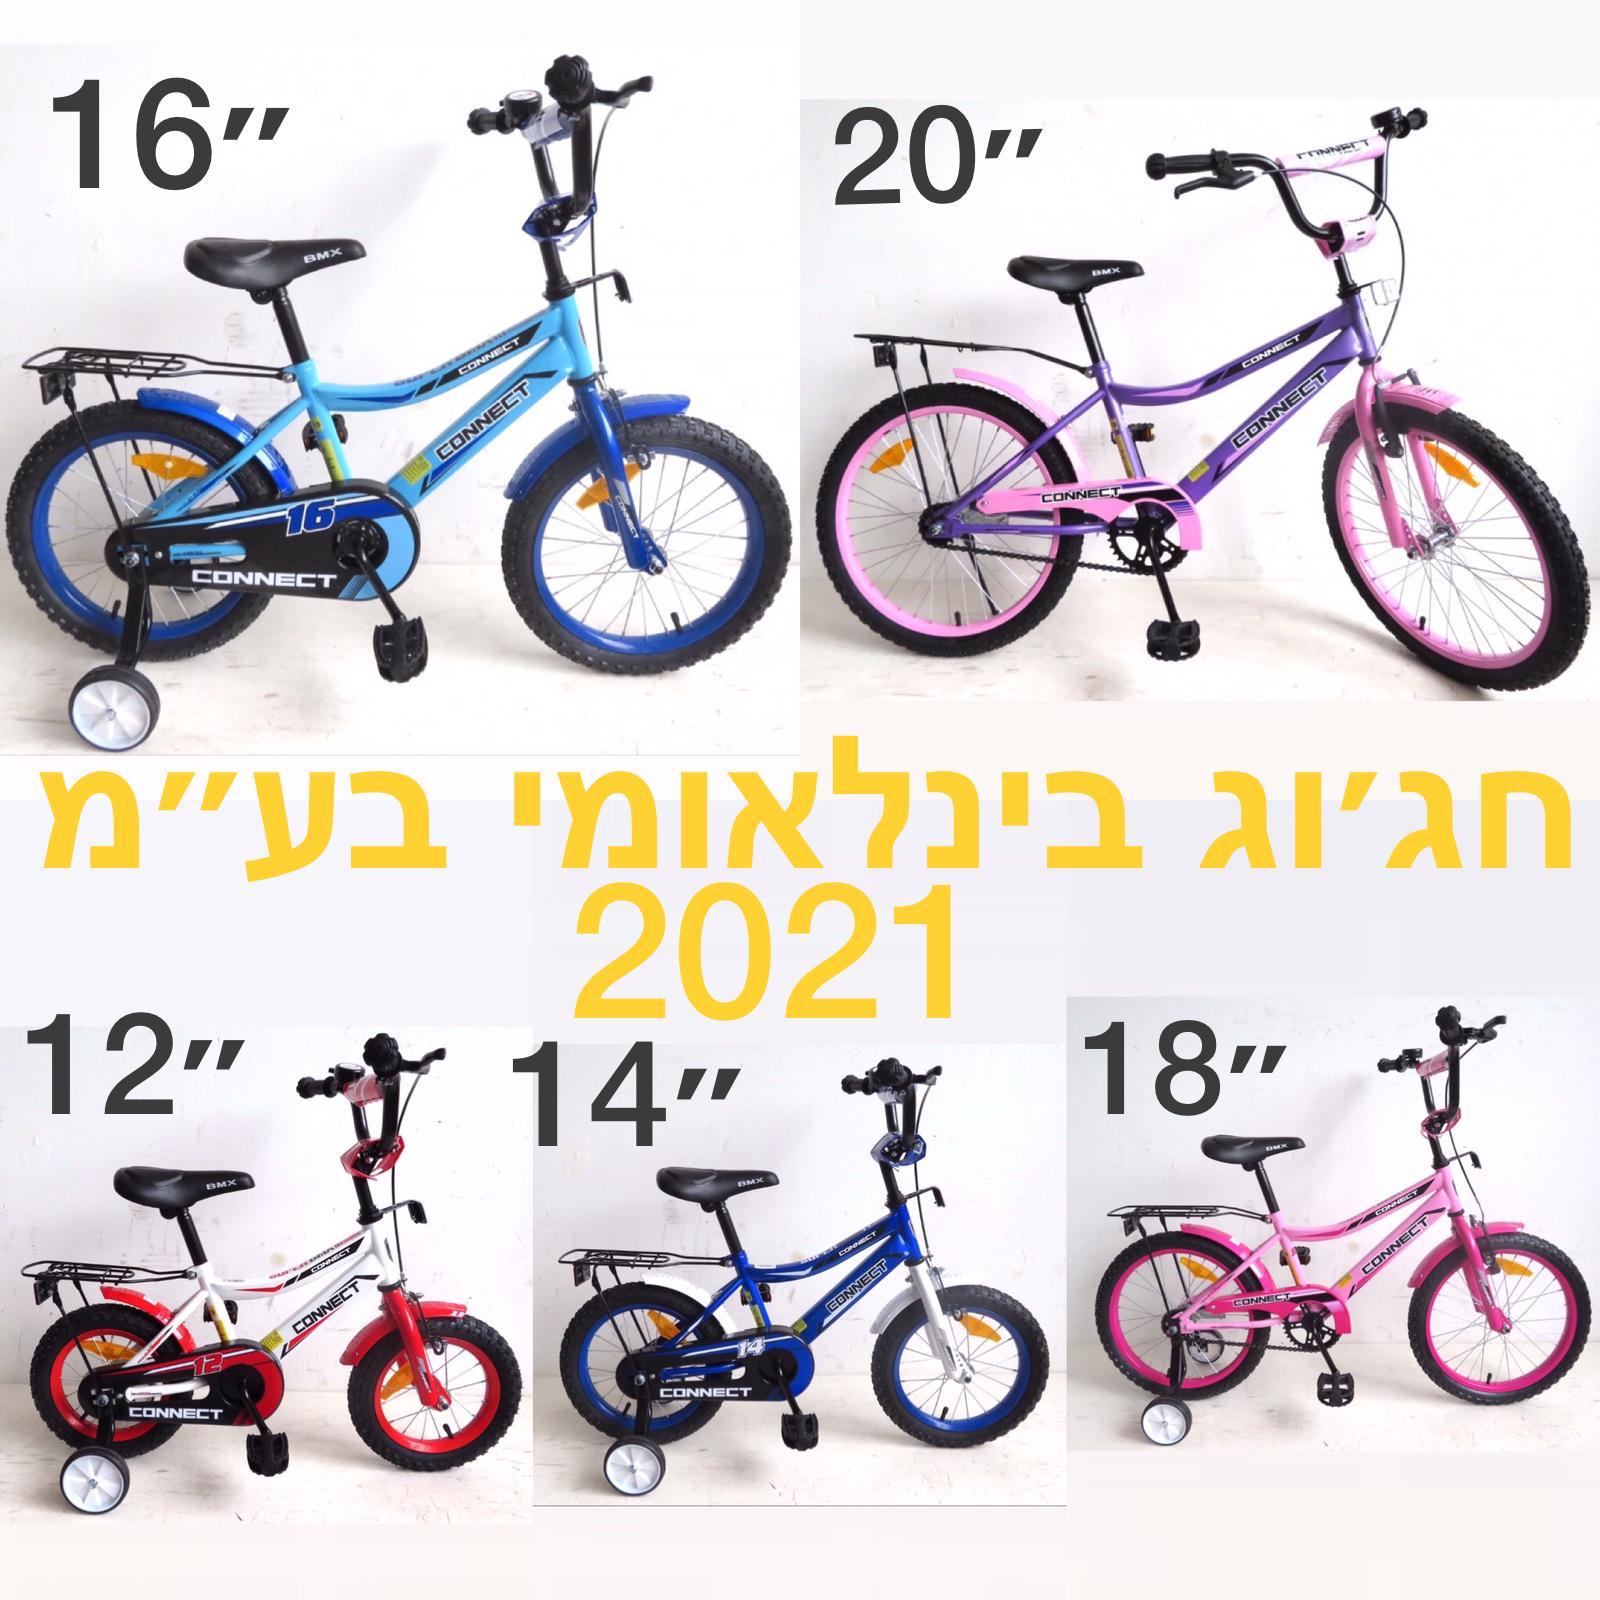 אופניי ילדים במבצע:  אופני BMX מקוריים בגודל 12' במחיר הזול בארץ רק  289 ש"ח ואפשרות משלוחים לכל הארץ!